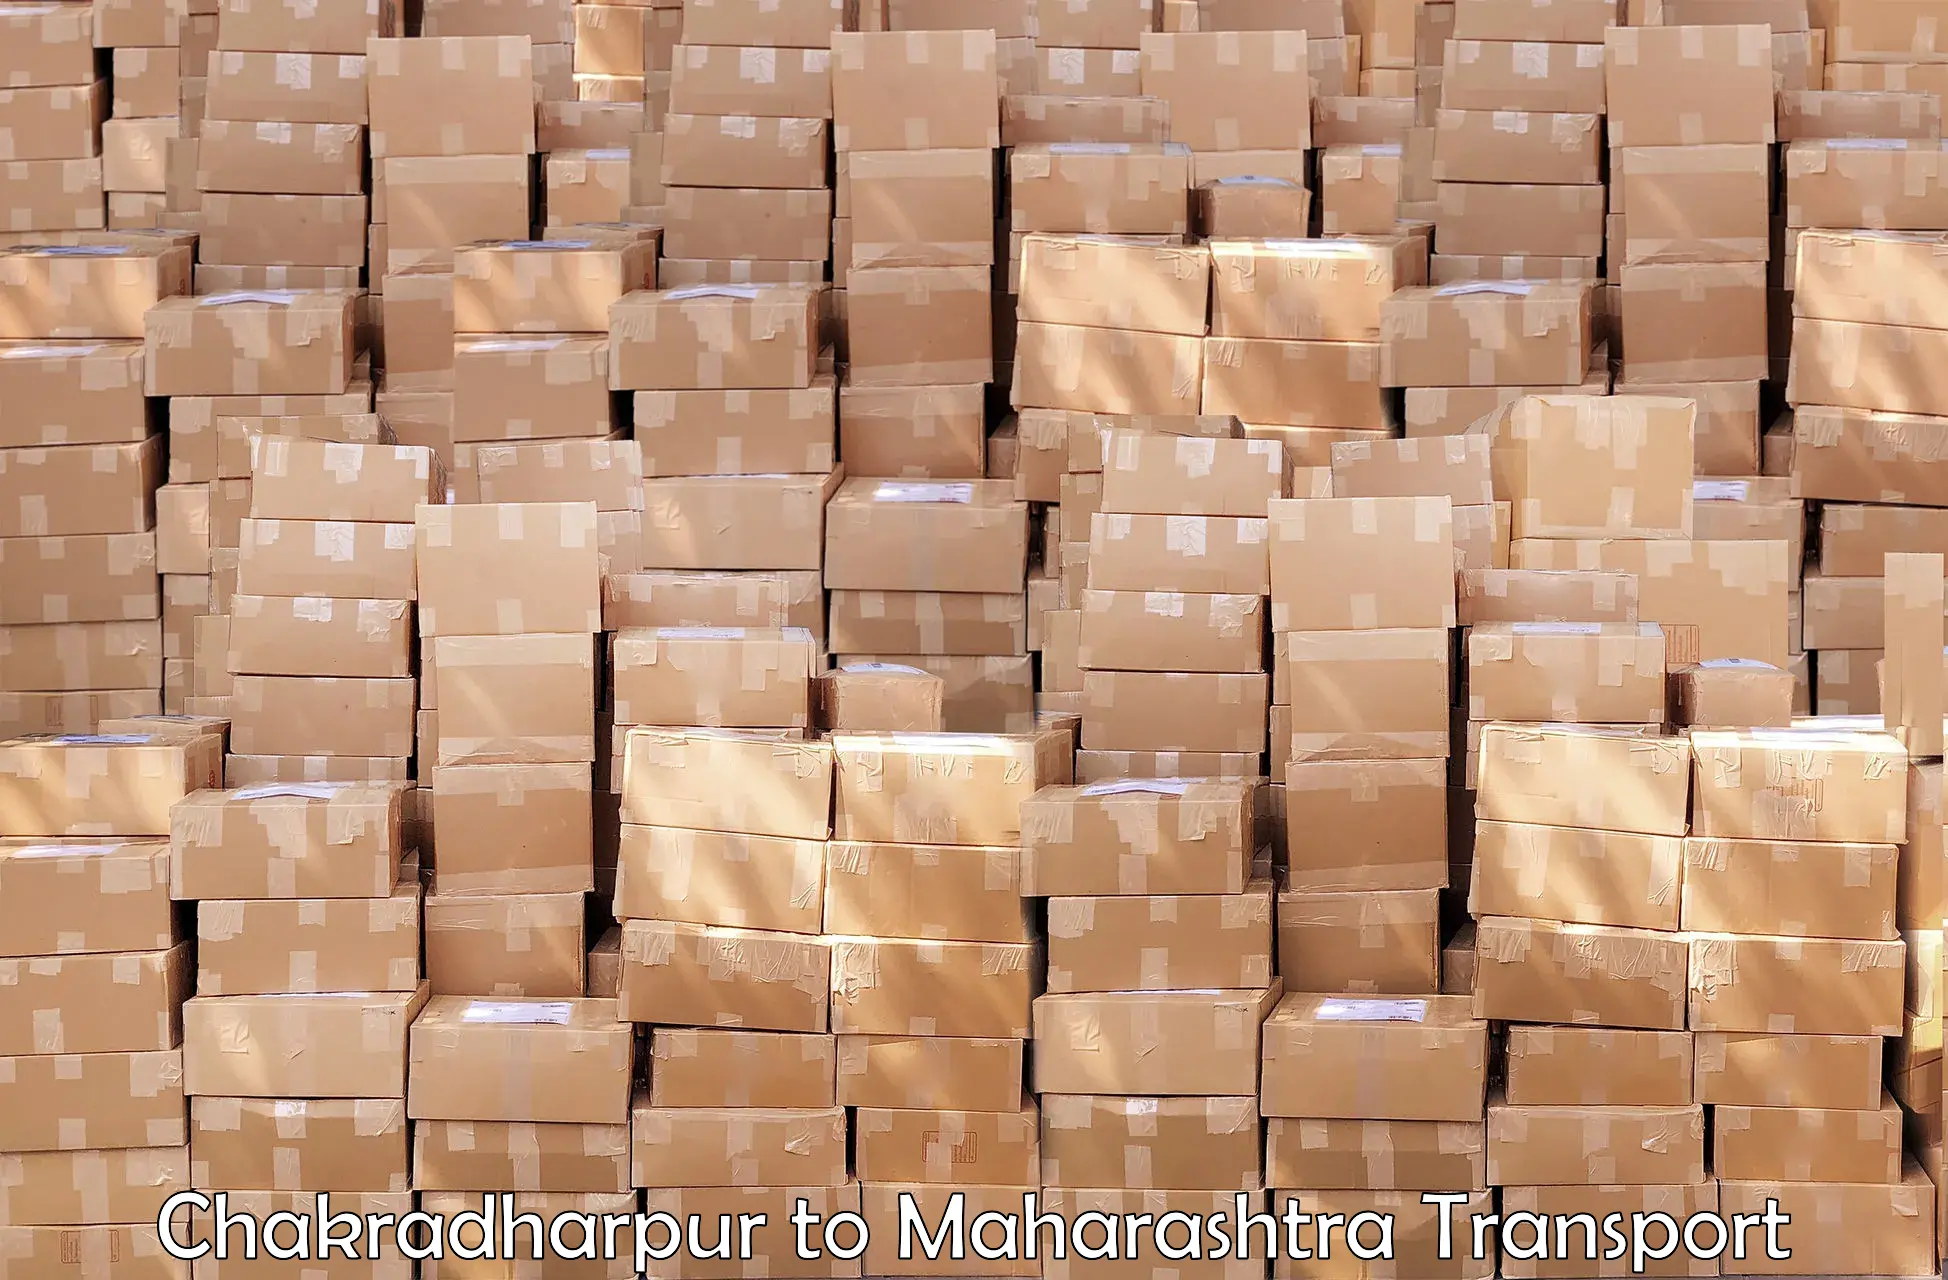 Truck transport companies in India Chakradharpur to Ghatanji